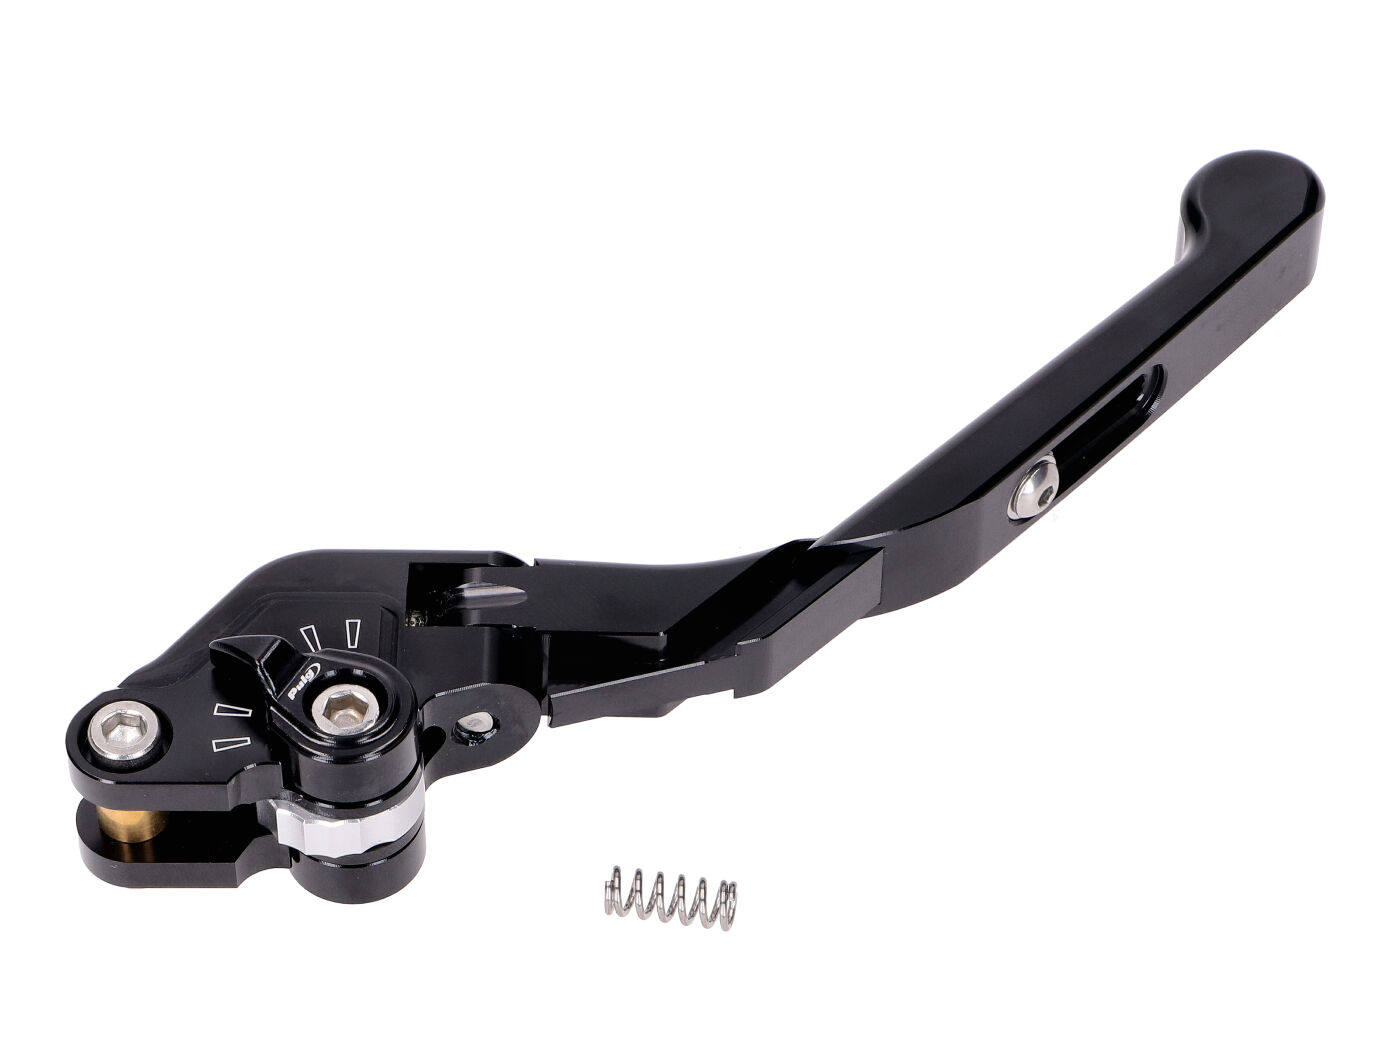 Brake Lever Puig 3.0 Front Adjustable, Foldable, Adjustable Length - Black